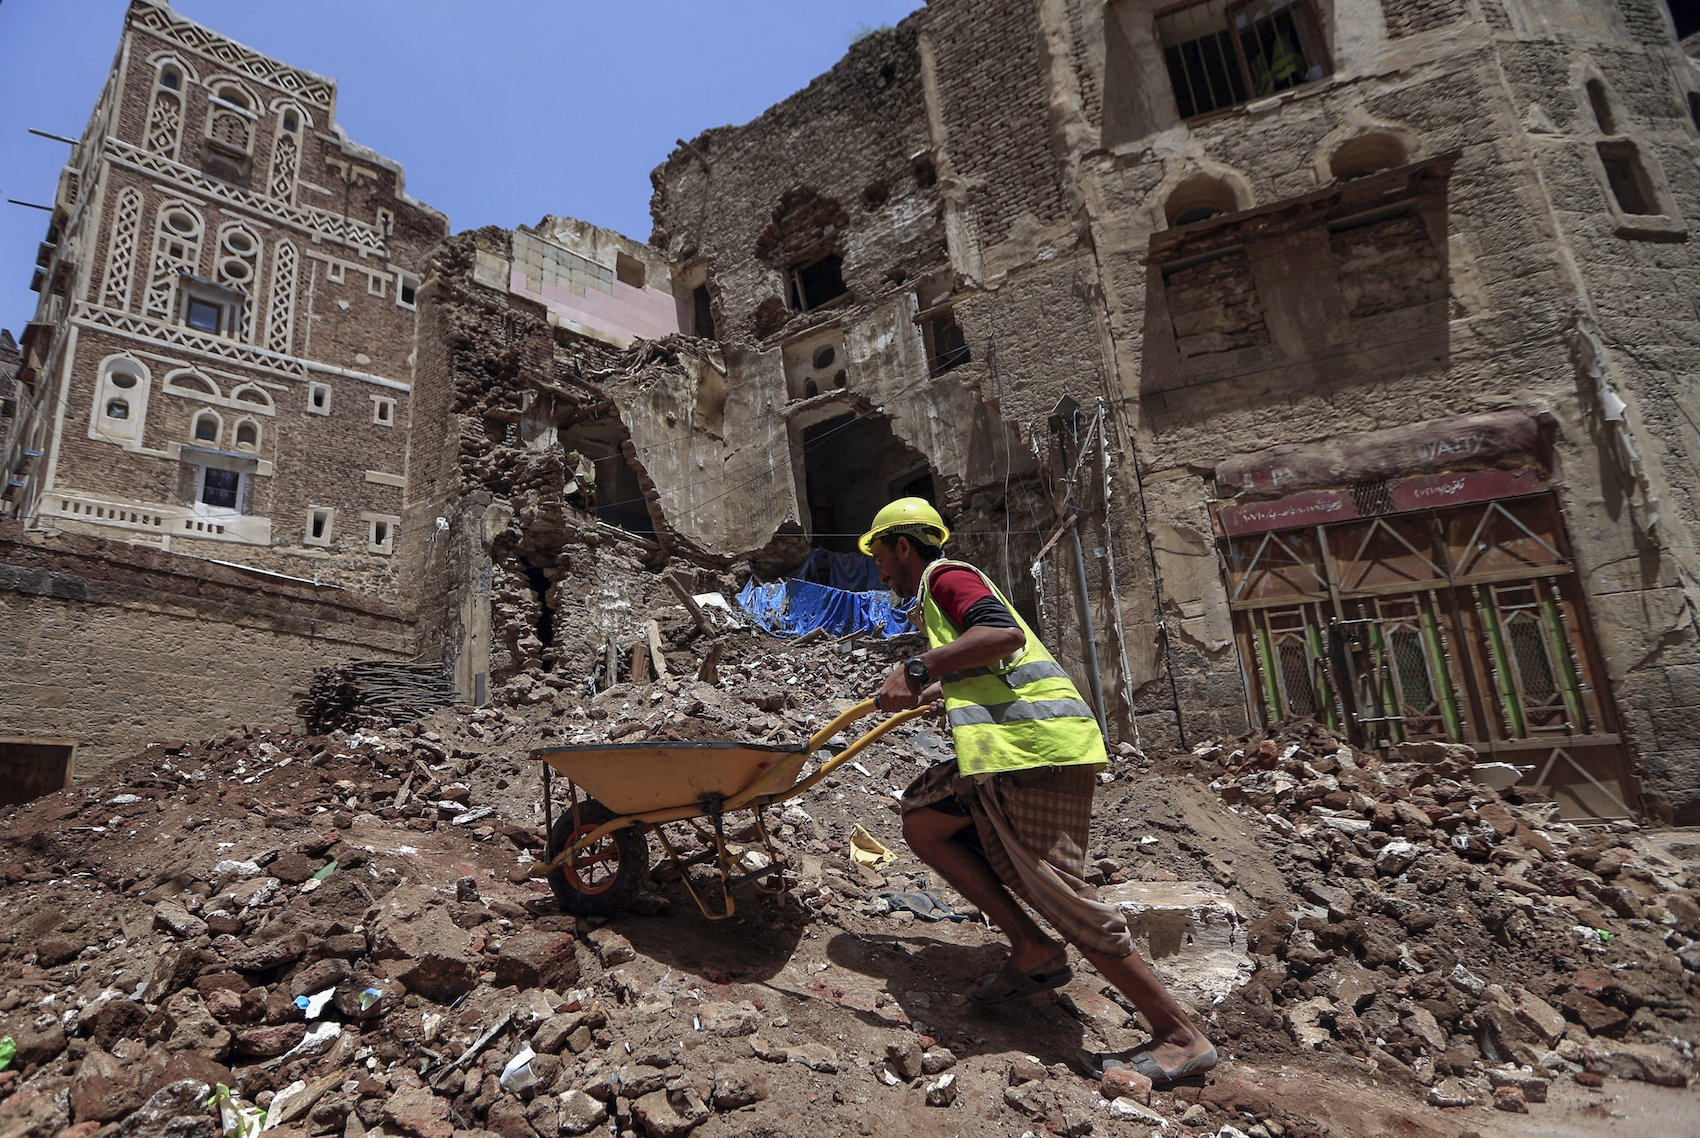 Worker repairs home in Old City of Sanaa